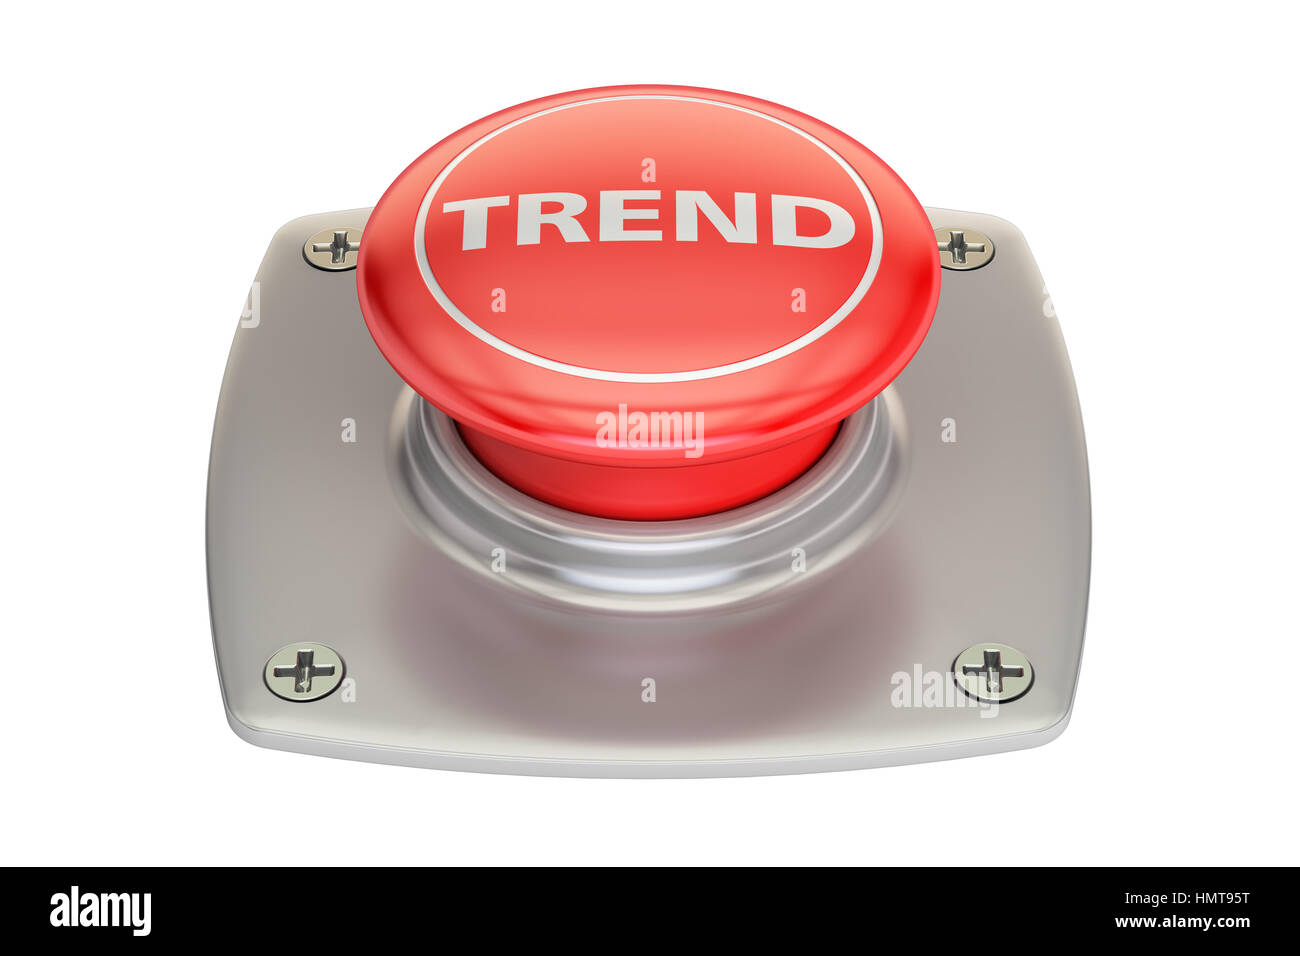 Trend, die rote Taste, 3D-Rendering isolierten auf weißen Hintergrund Stockfoto